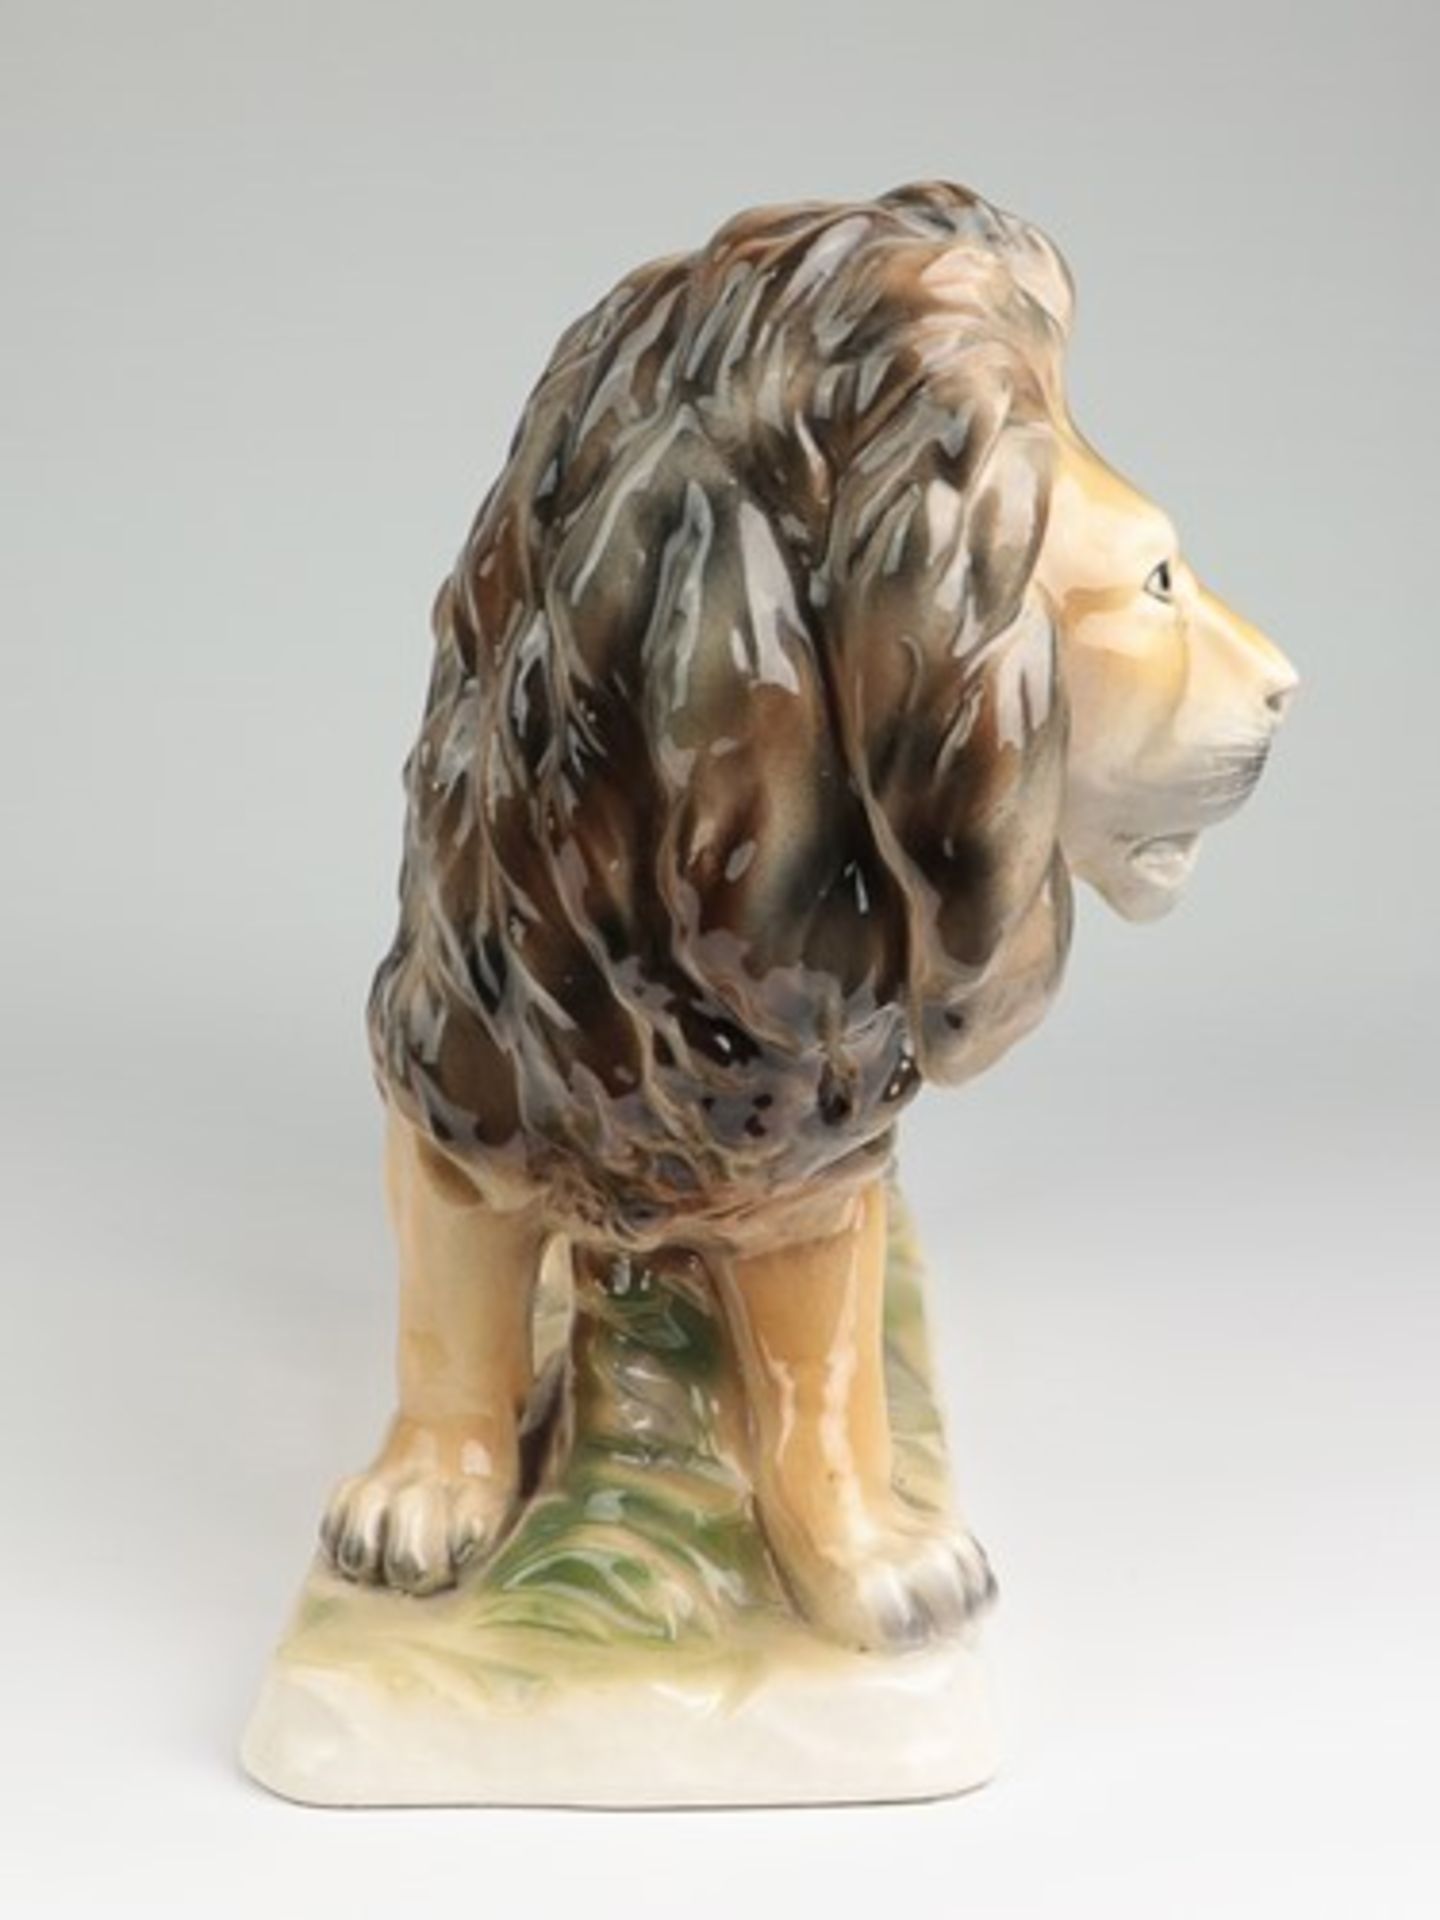 Sitzendorf - FigurStempelmarke, Steingut, vollplast. Figur eines schreitenden Löwen auf - Image 5 of 7